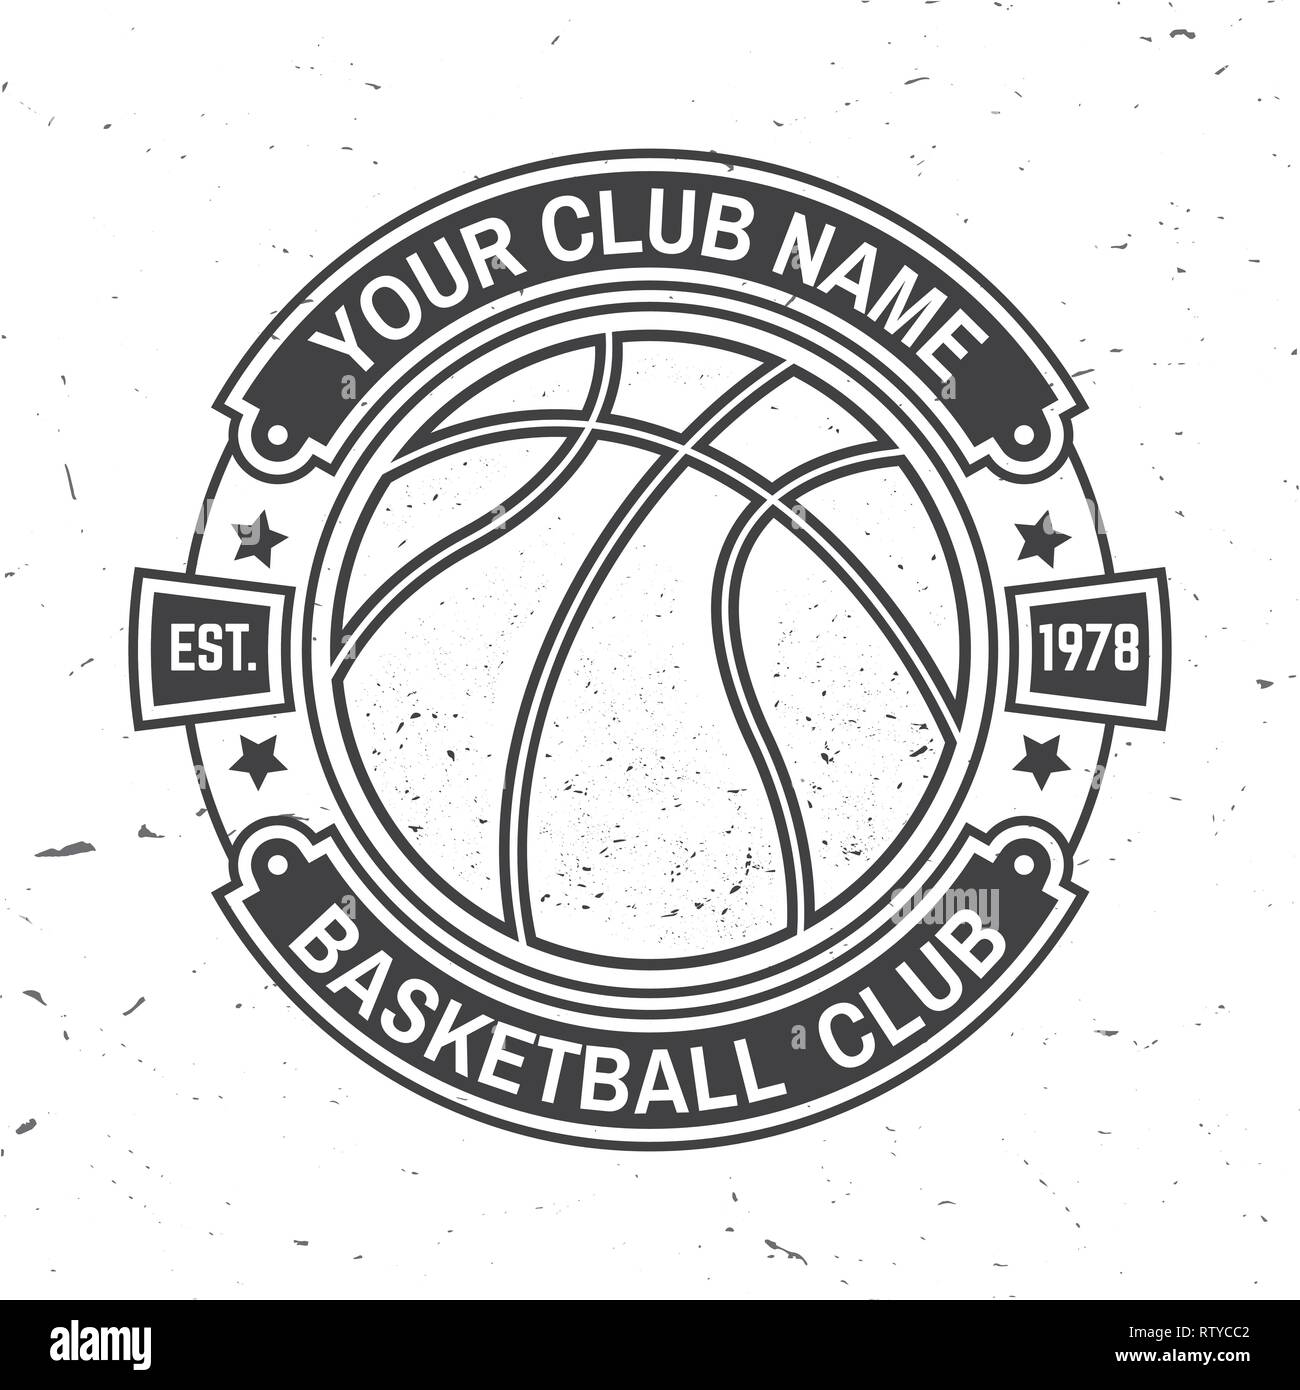 Basketball Club Abzeichen. Vector Illustration. Konzept für T-Shirt, Druck, Stempel oder T-Stück. Vintage Typografie Design mit Basketball Ball Silhouette. Stock Vektor